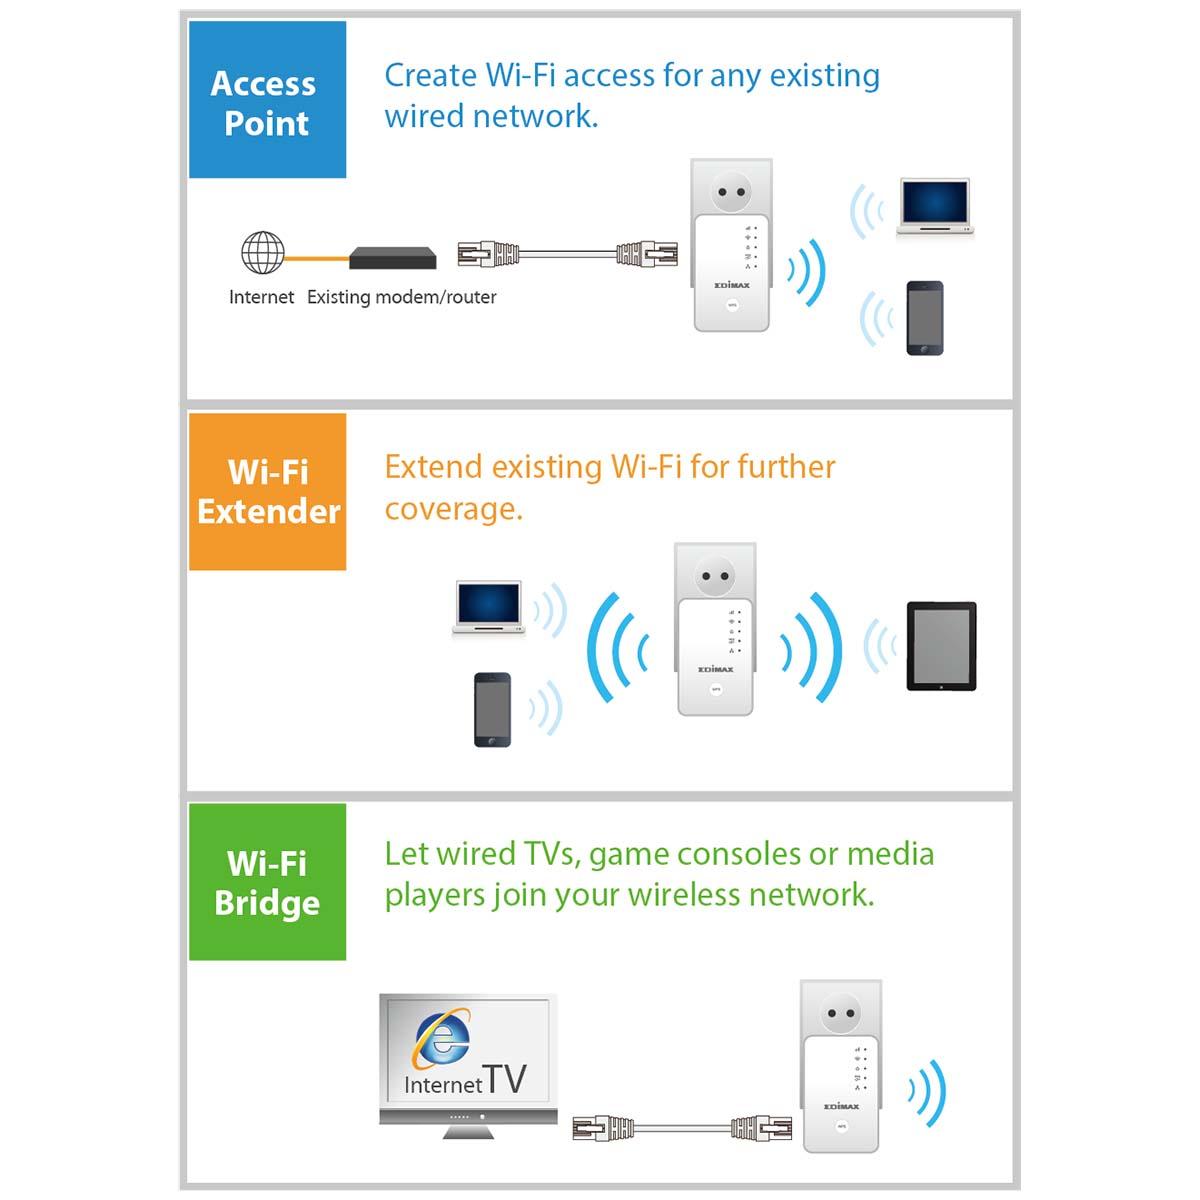 Répéteur wifi n300 edimax  extender  / point d'accès / pont wi-fi